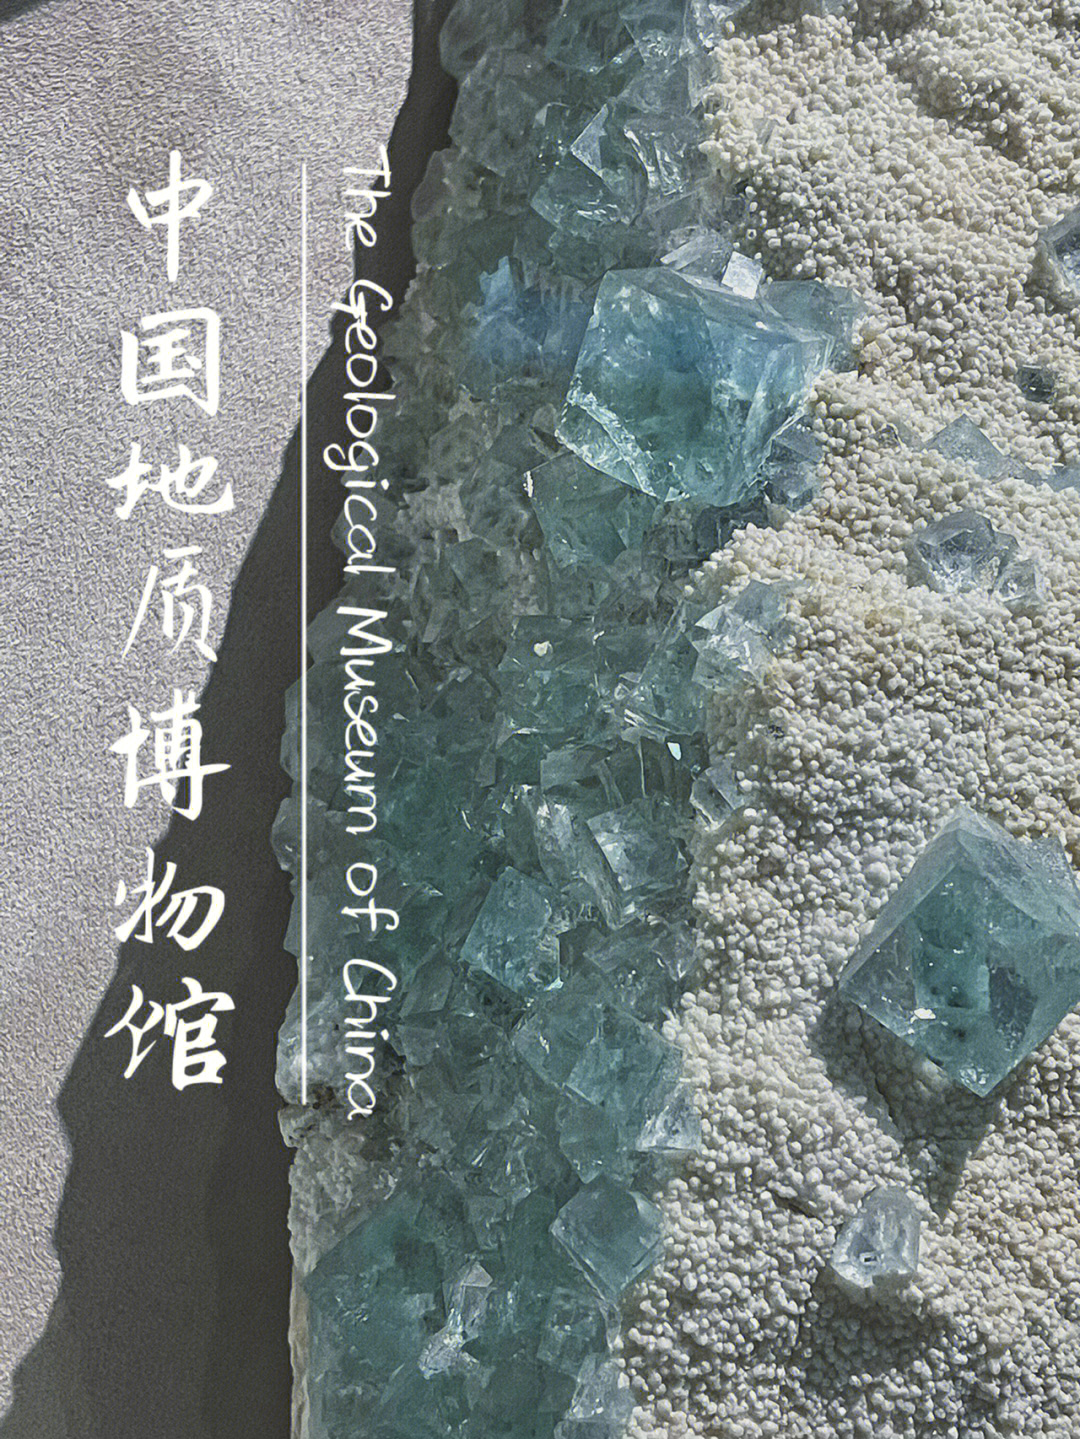 中国地质博物馆水晶狂热爱好者打卡